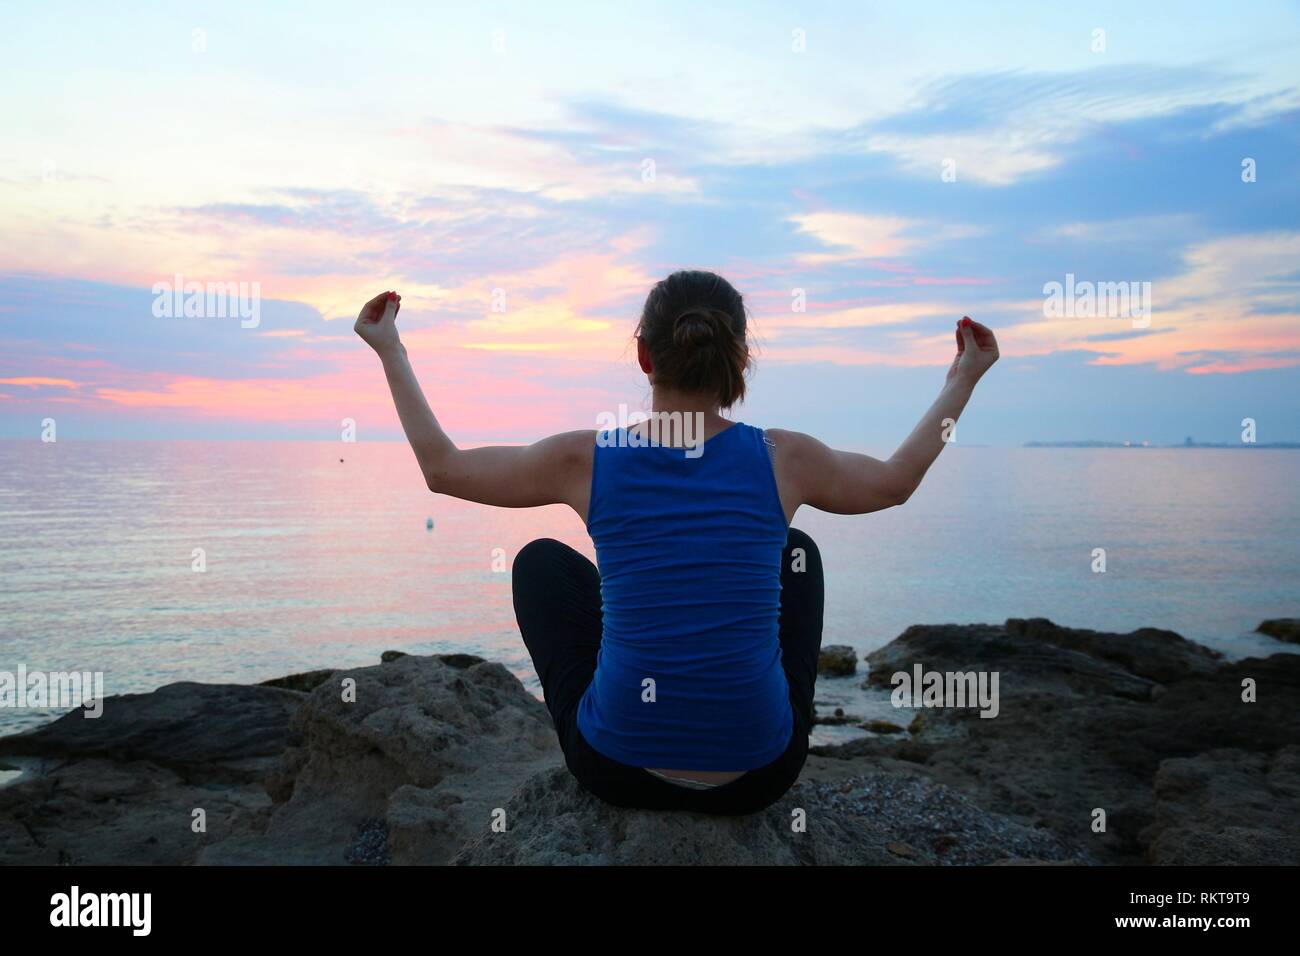 Yoga asana - tranquil meditation exercise with sunset view of Italian coast. Sukhasana - decent pose. Stock Photo